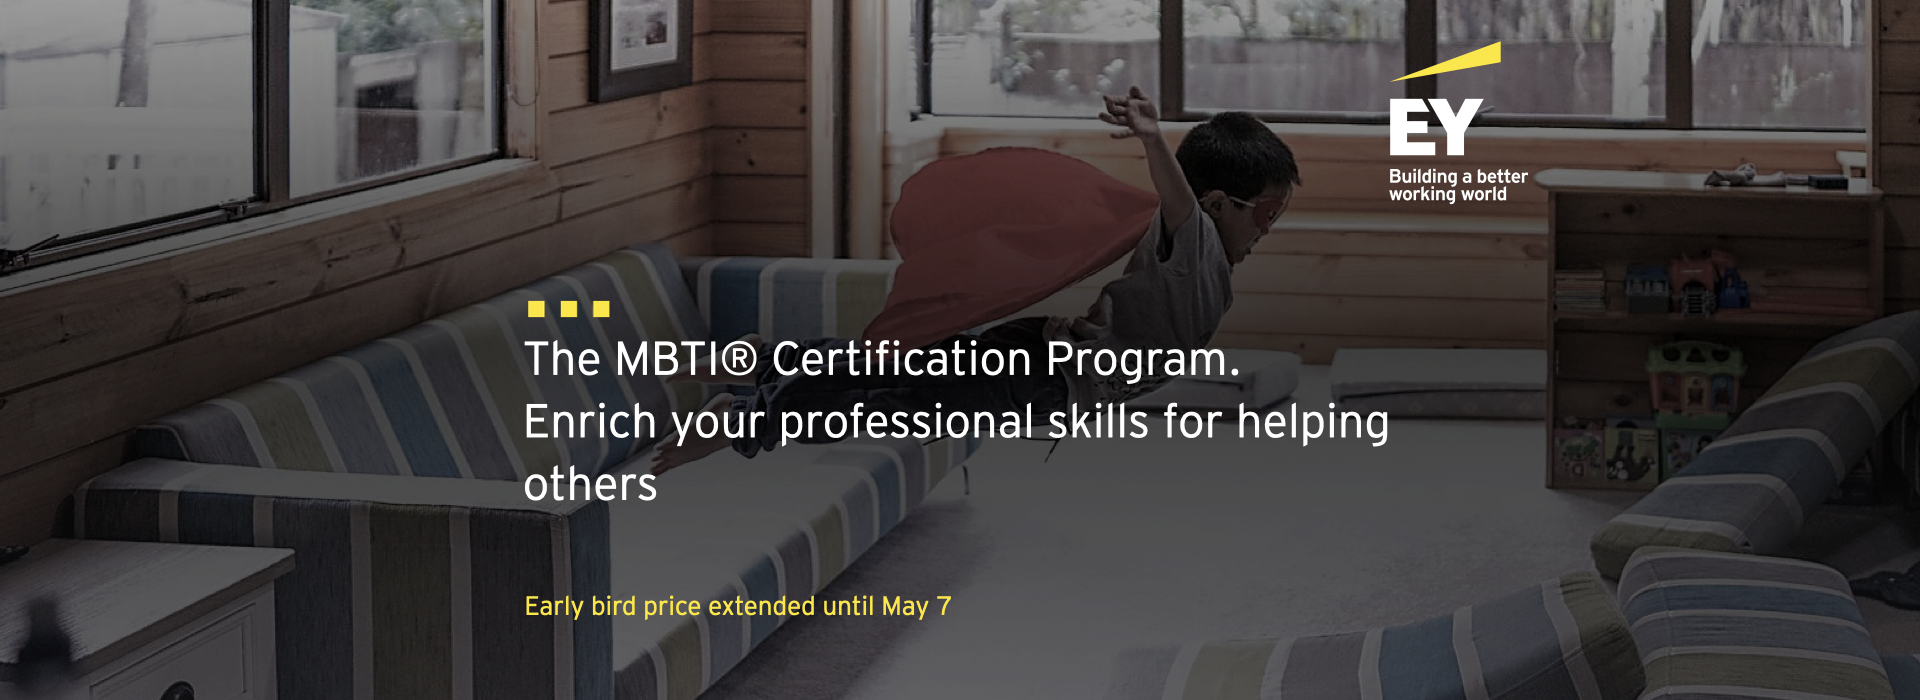 Програма підготовки сертифікованих фахівців MBTI®